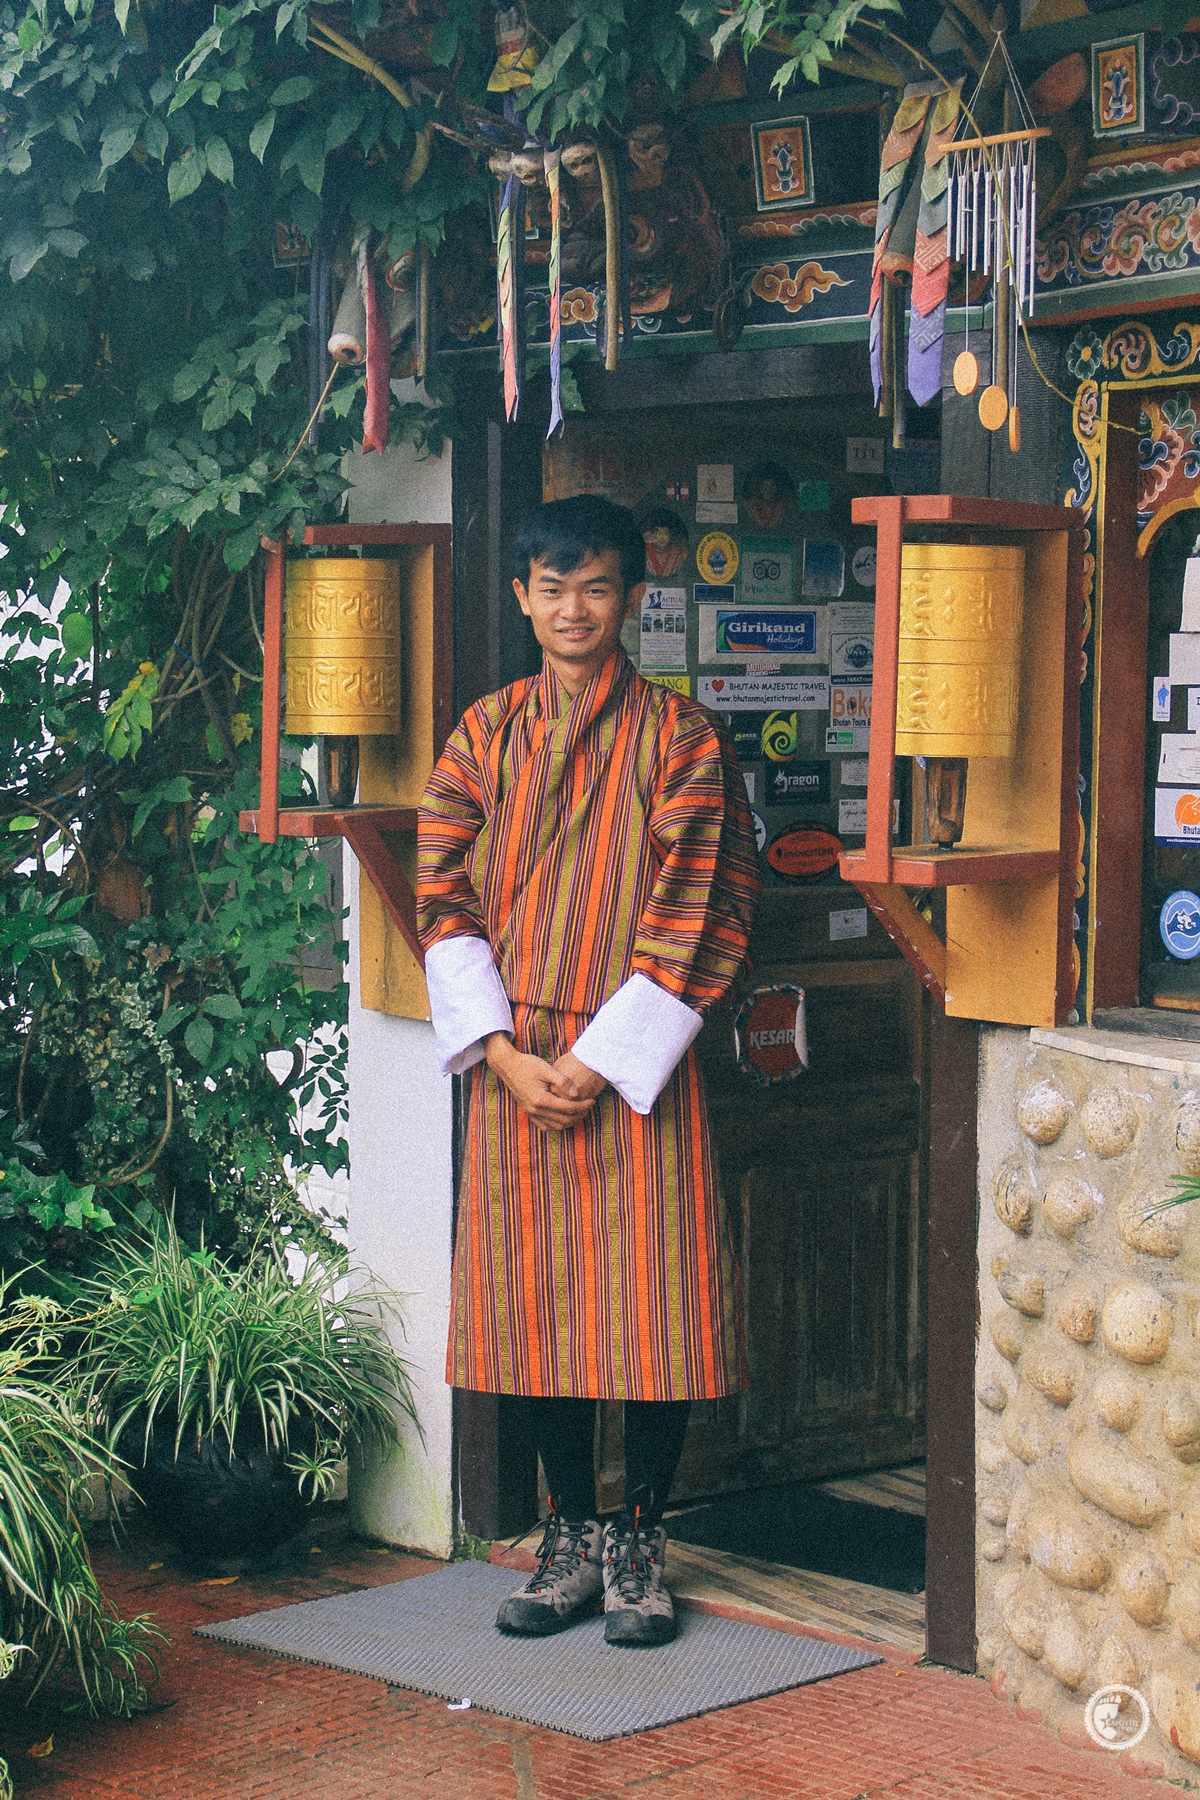 Trang phục Gho tớ mặc lên cũng giống người Bhutan phết - Ảnh du lịch Bhutan